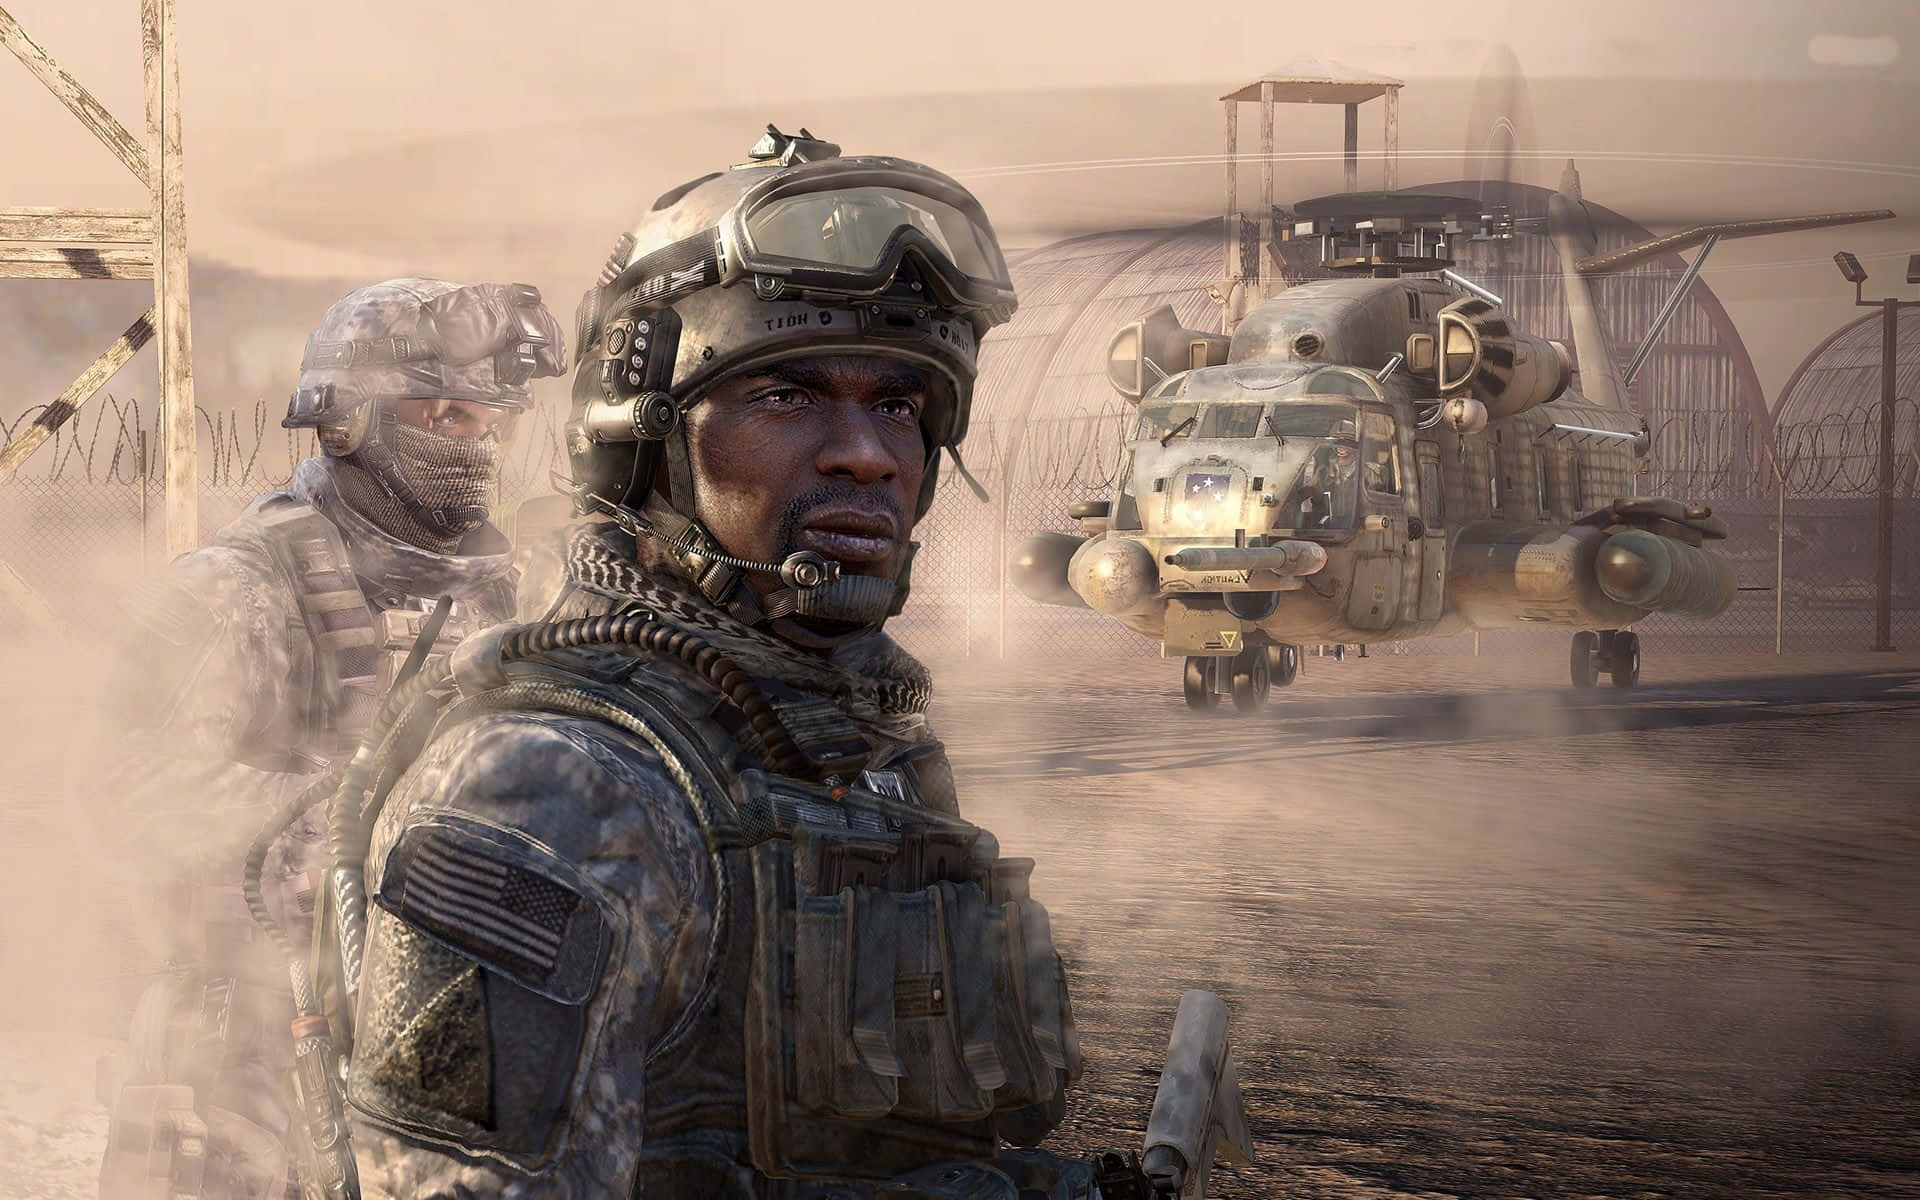 Preparatia Vivere Intense Battaglie Con Call Of Duty Modern Warfare